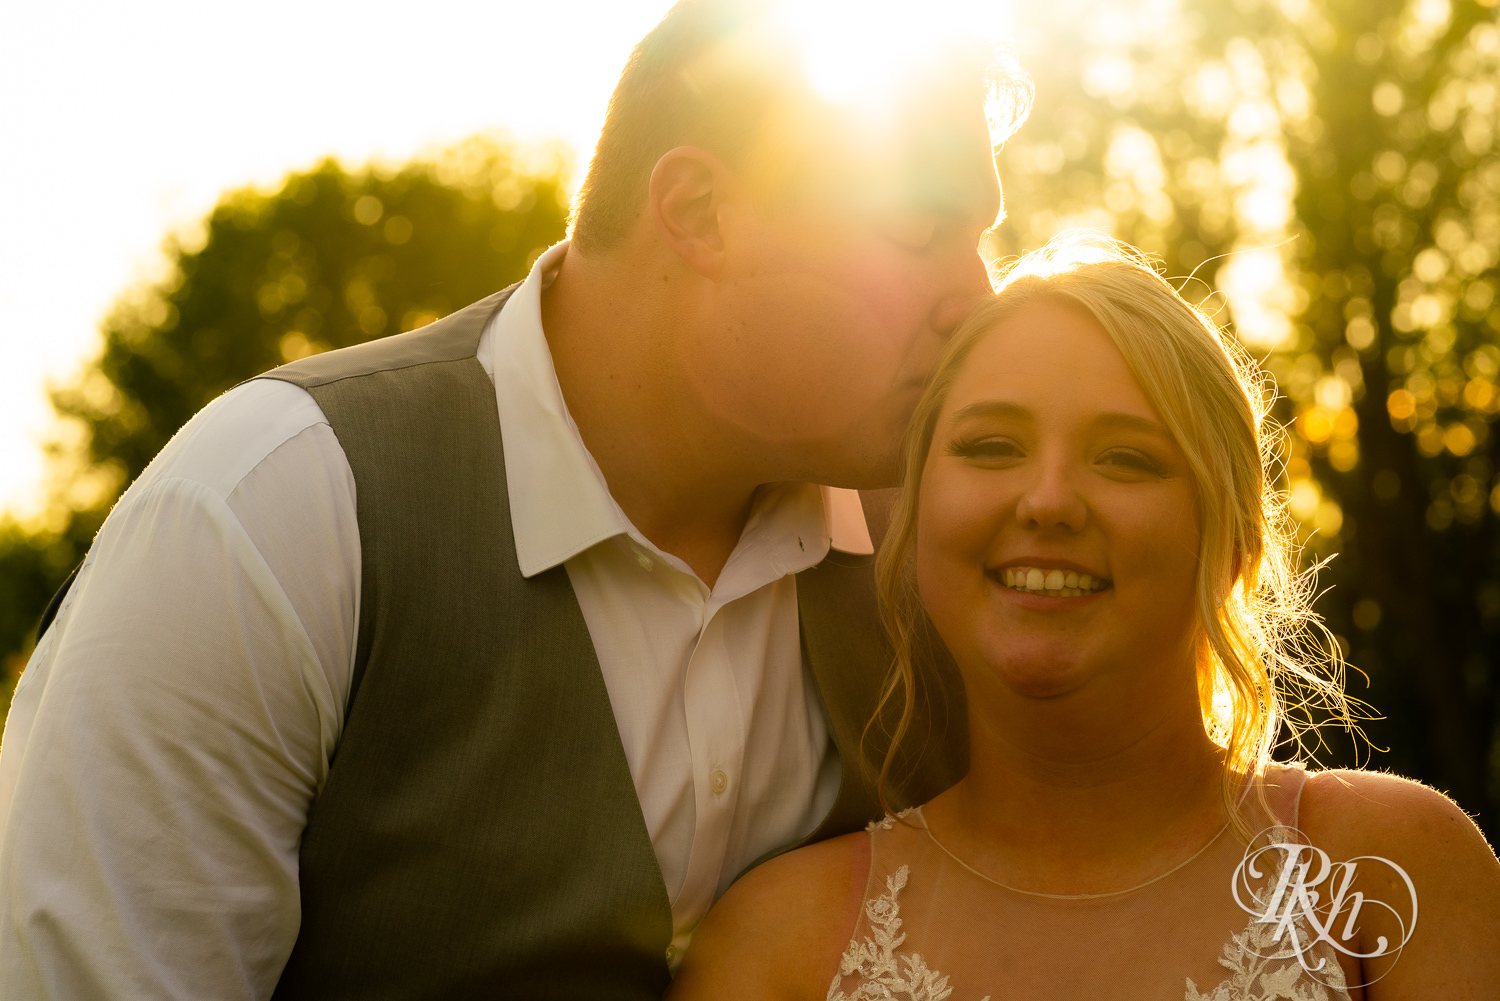 Bride and groom kiss at sunset at wedding at Barn at Mirror Lake in Mondovi, Wisconsin.